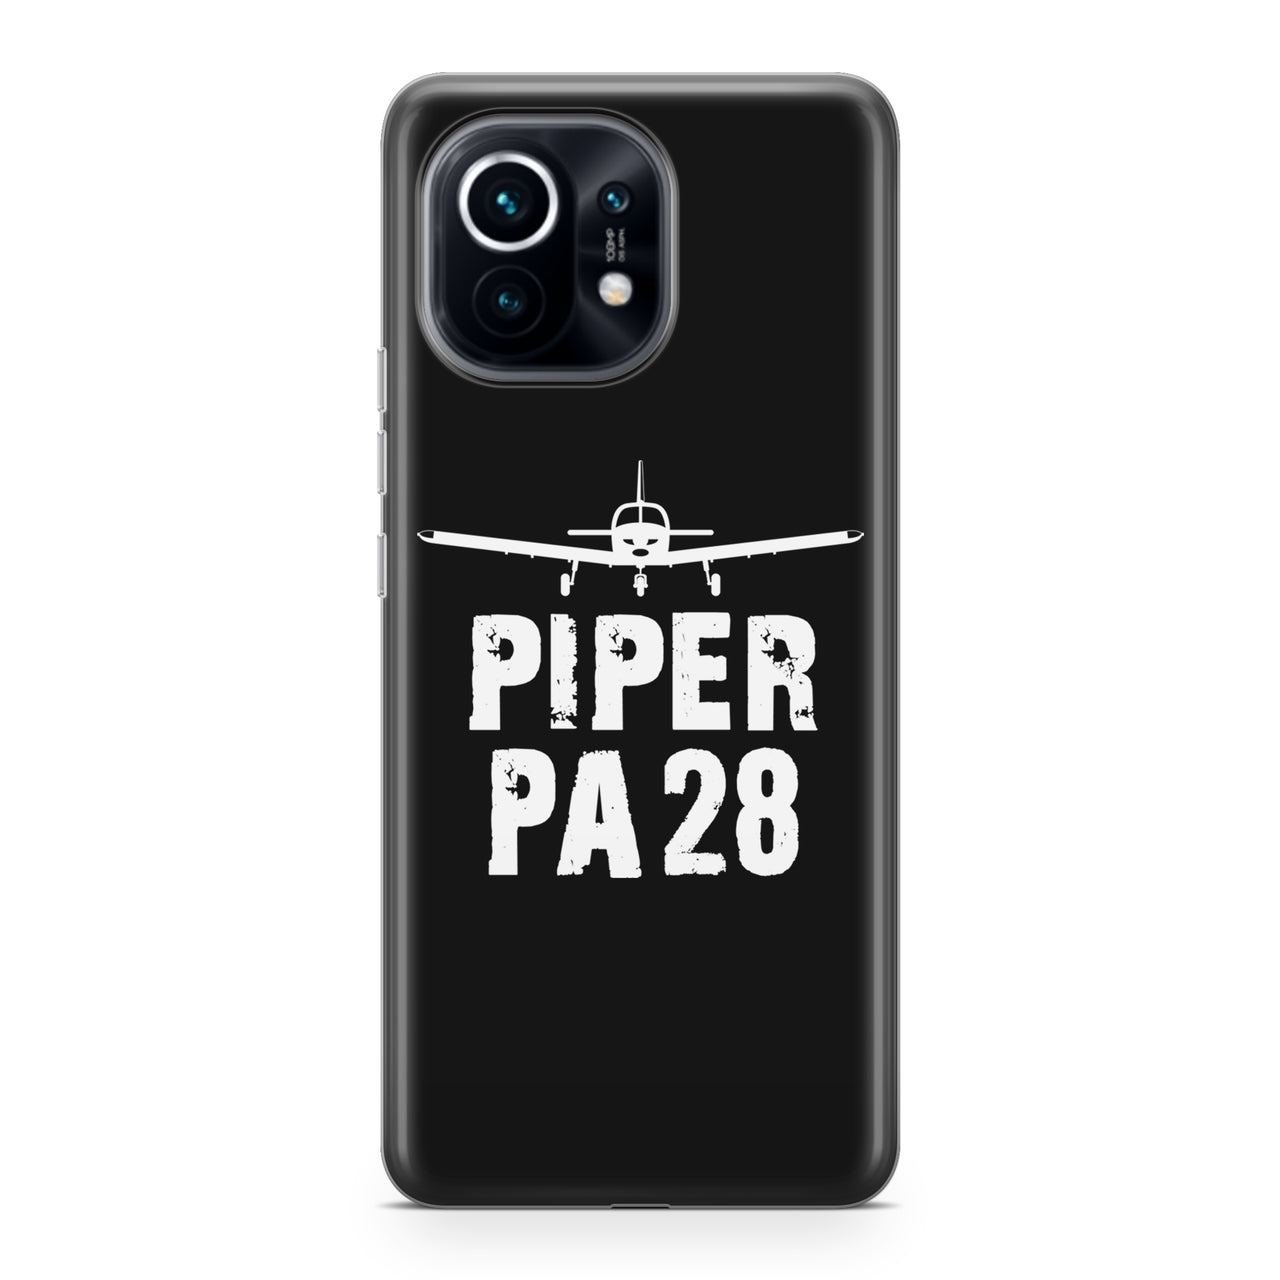 Piper PA28 & Plane Designed Xiaomi Cases